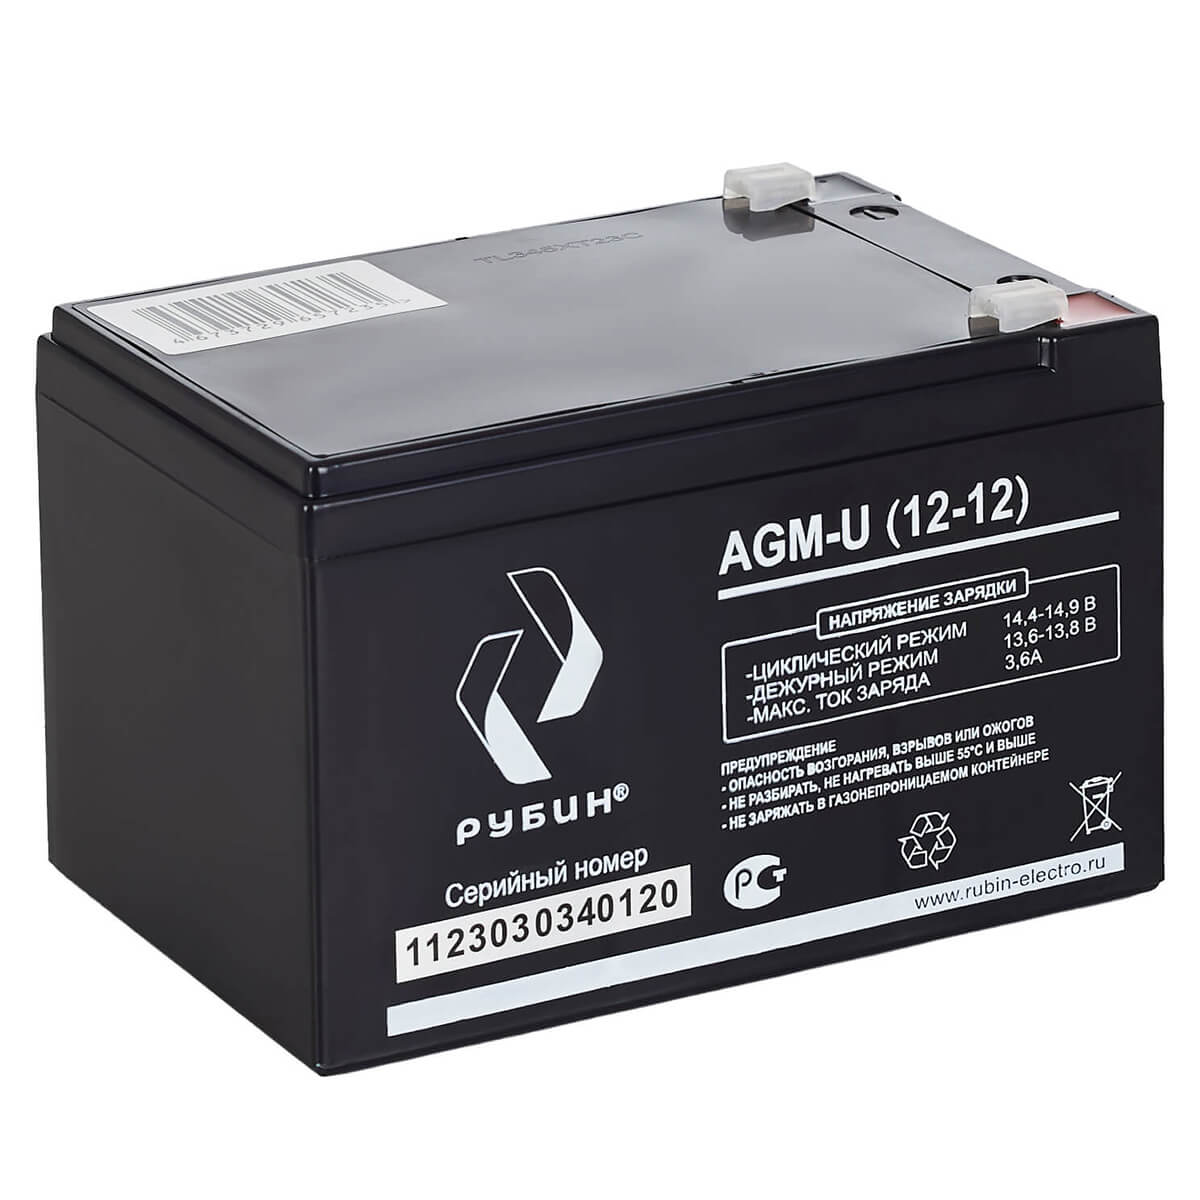 Рубин AGM-U (12-12) фото